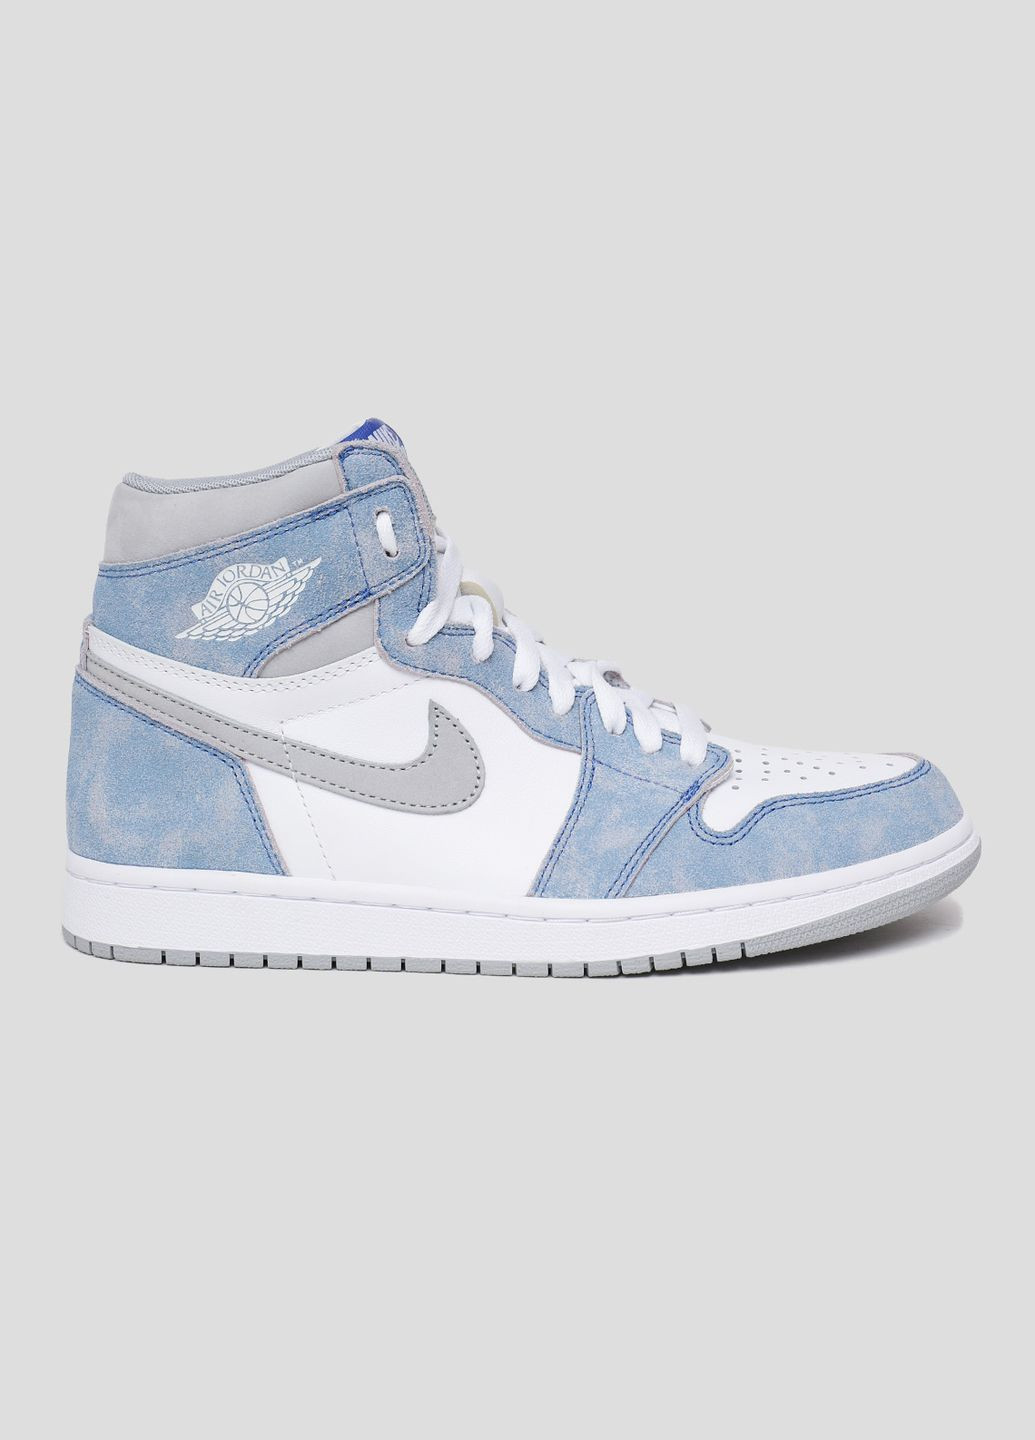 Белые бело-голубые кожаные хайтопы air jordan 1 retro high Nike